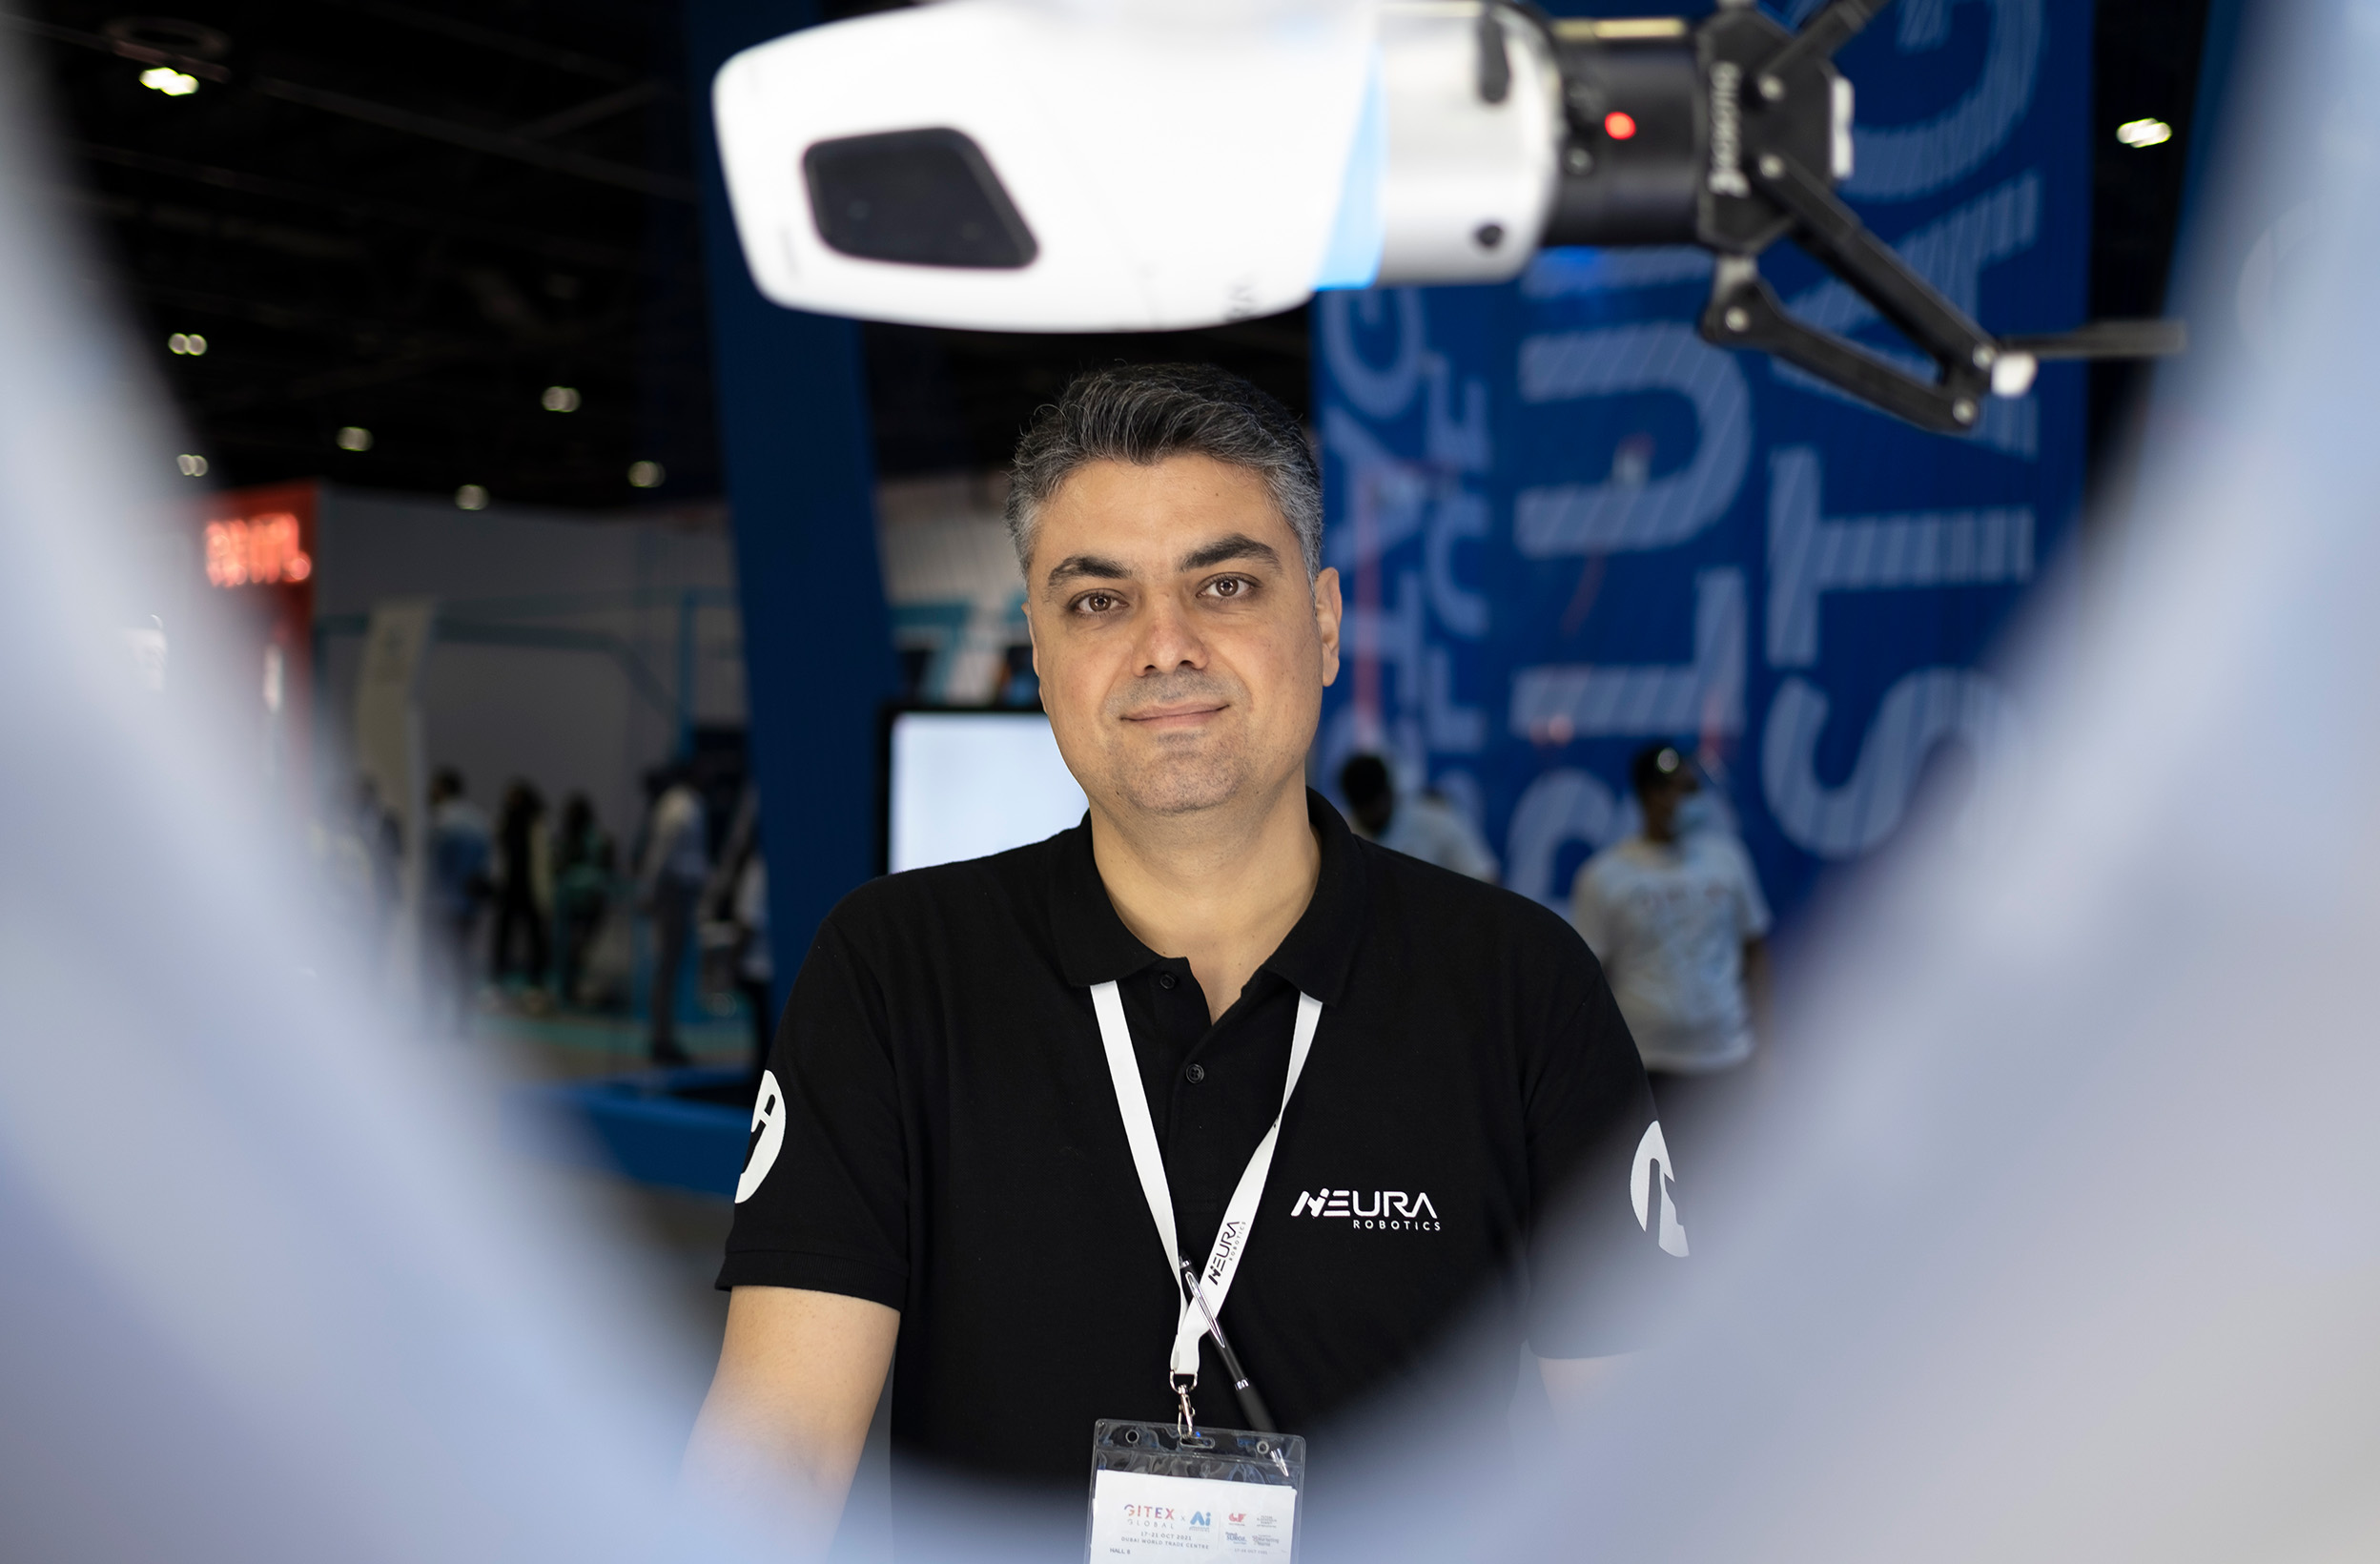 Milad Malekzadeh, Head of Artificial Intelligence at NEURA Robotics